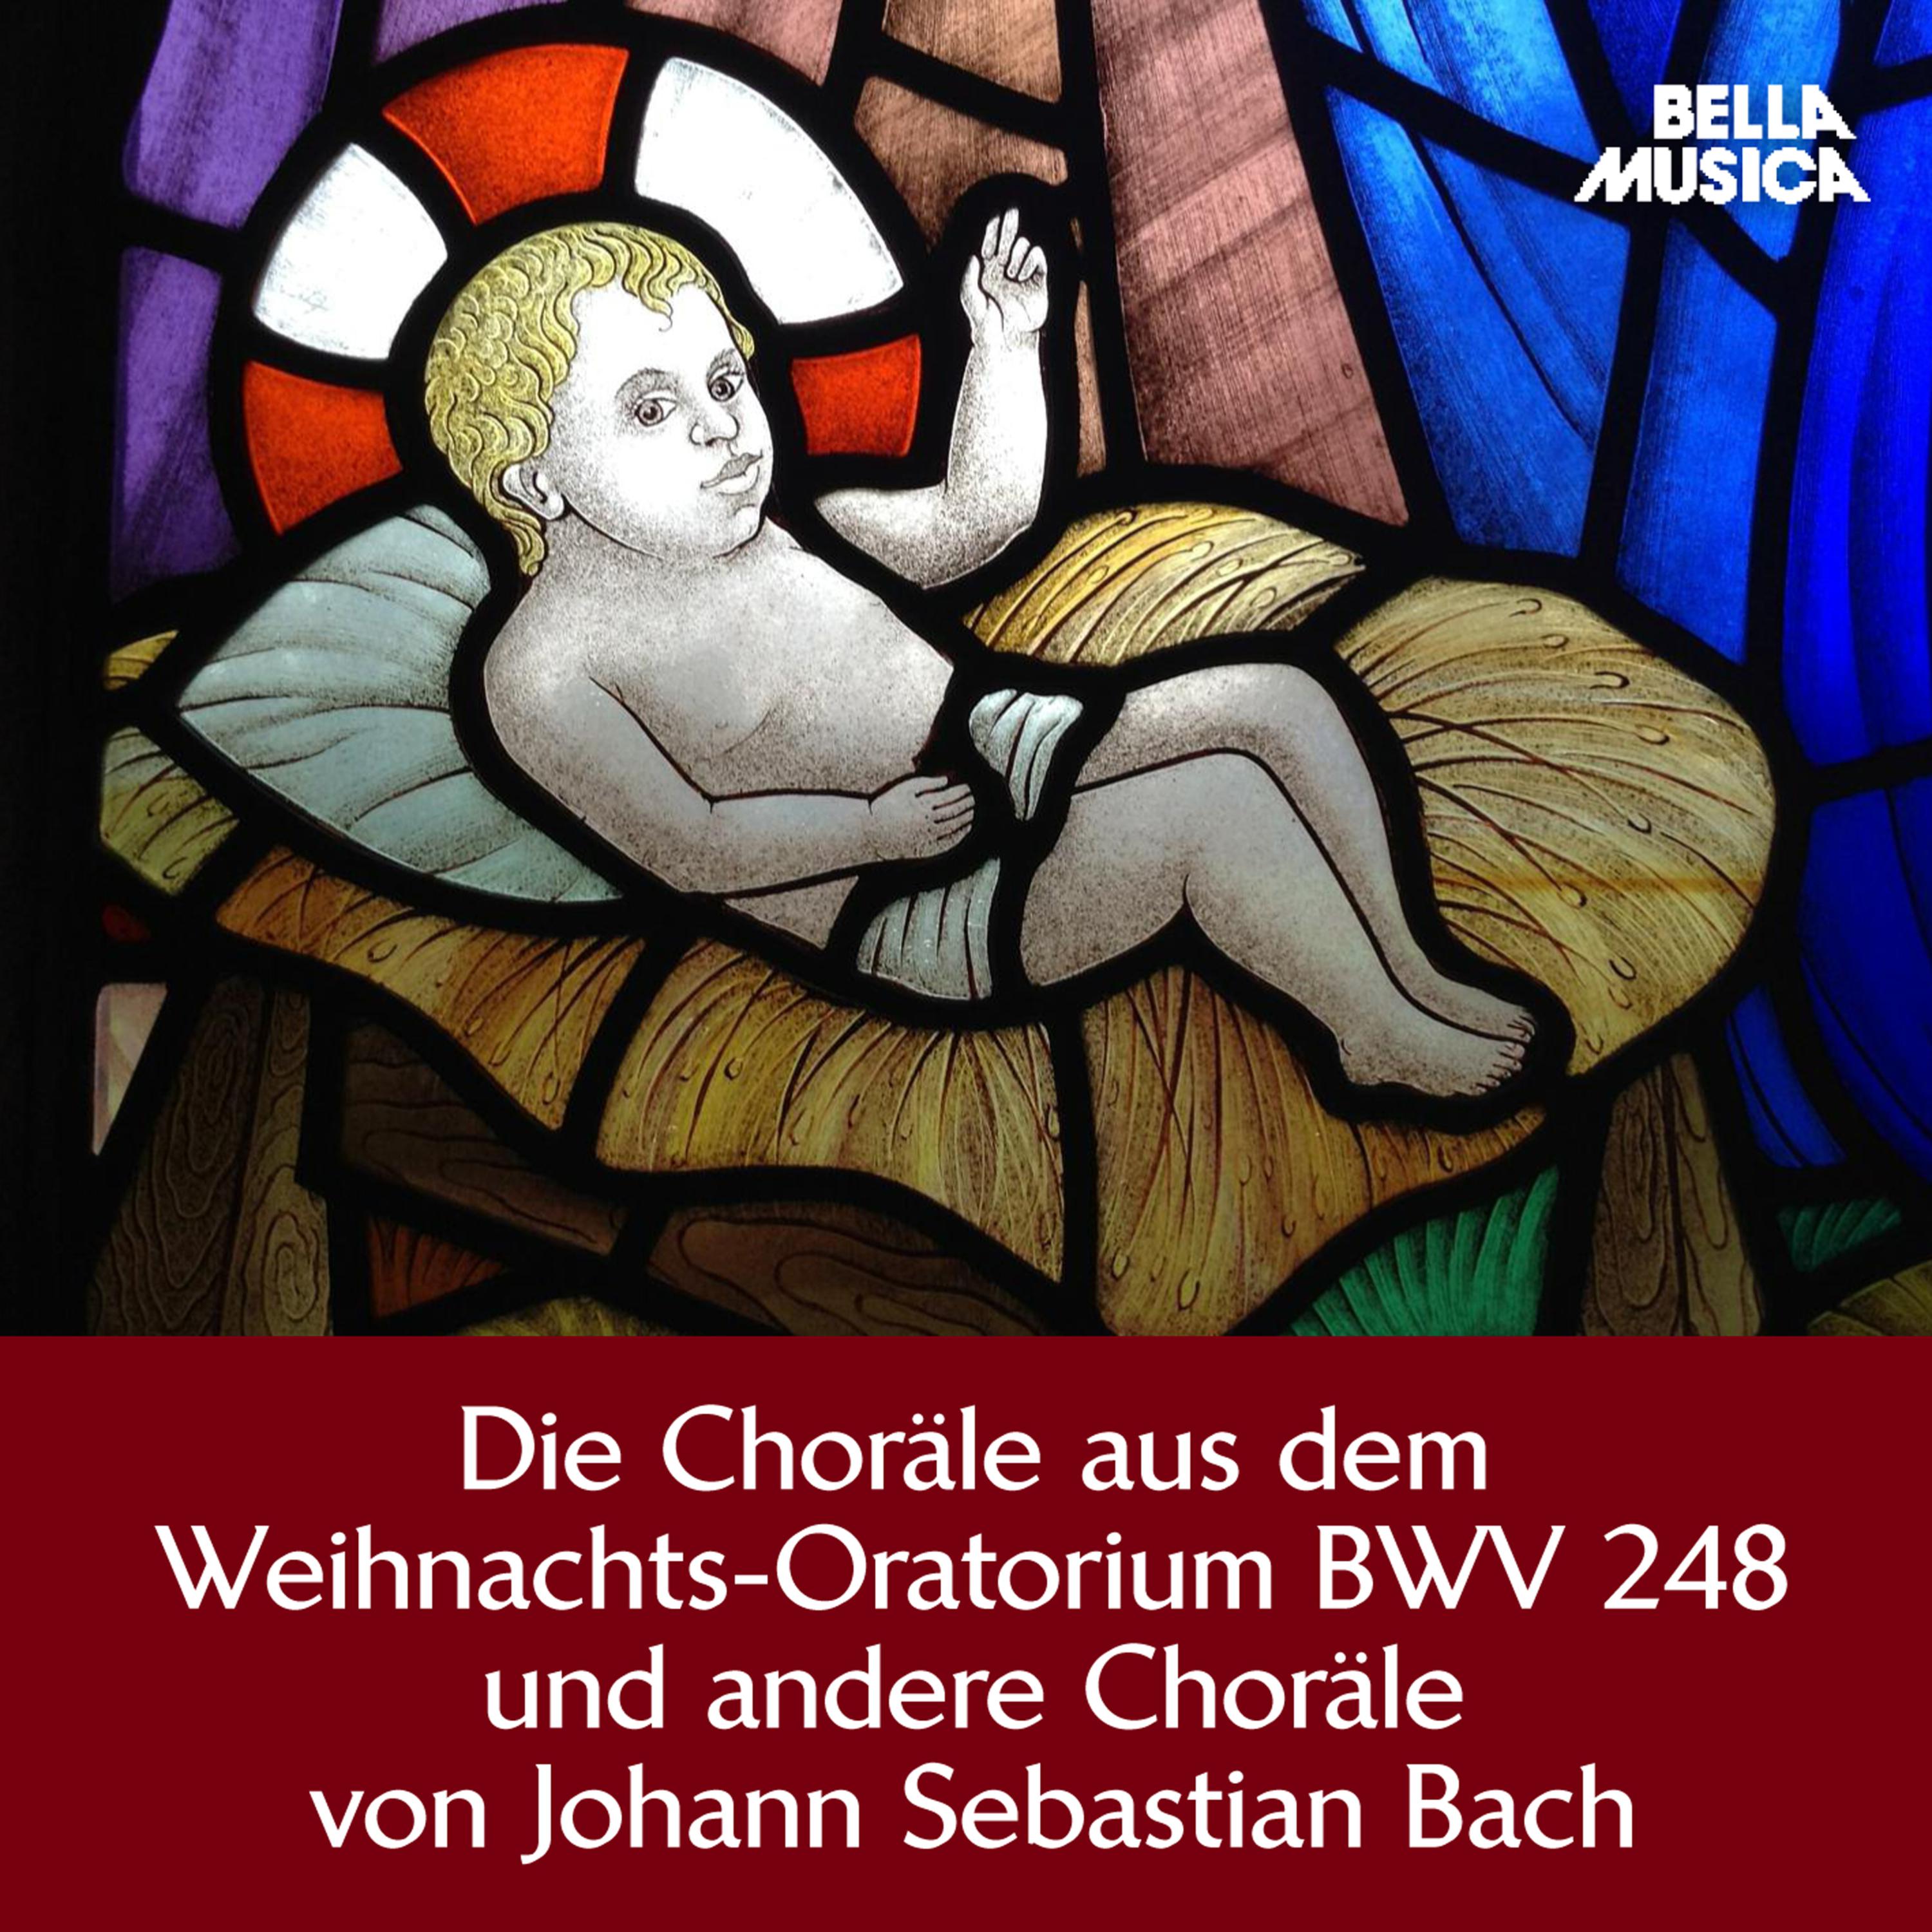 Weihnachts-Oratorium, BWV 248, Teil 5, Am Sonntage nach dem Neuer Jahr: Dein Glanz all Finsternis verzehrt